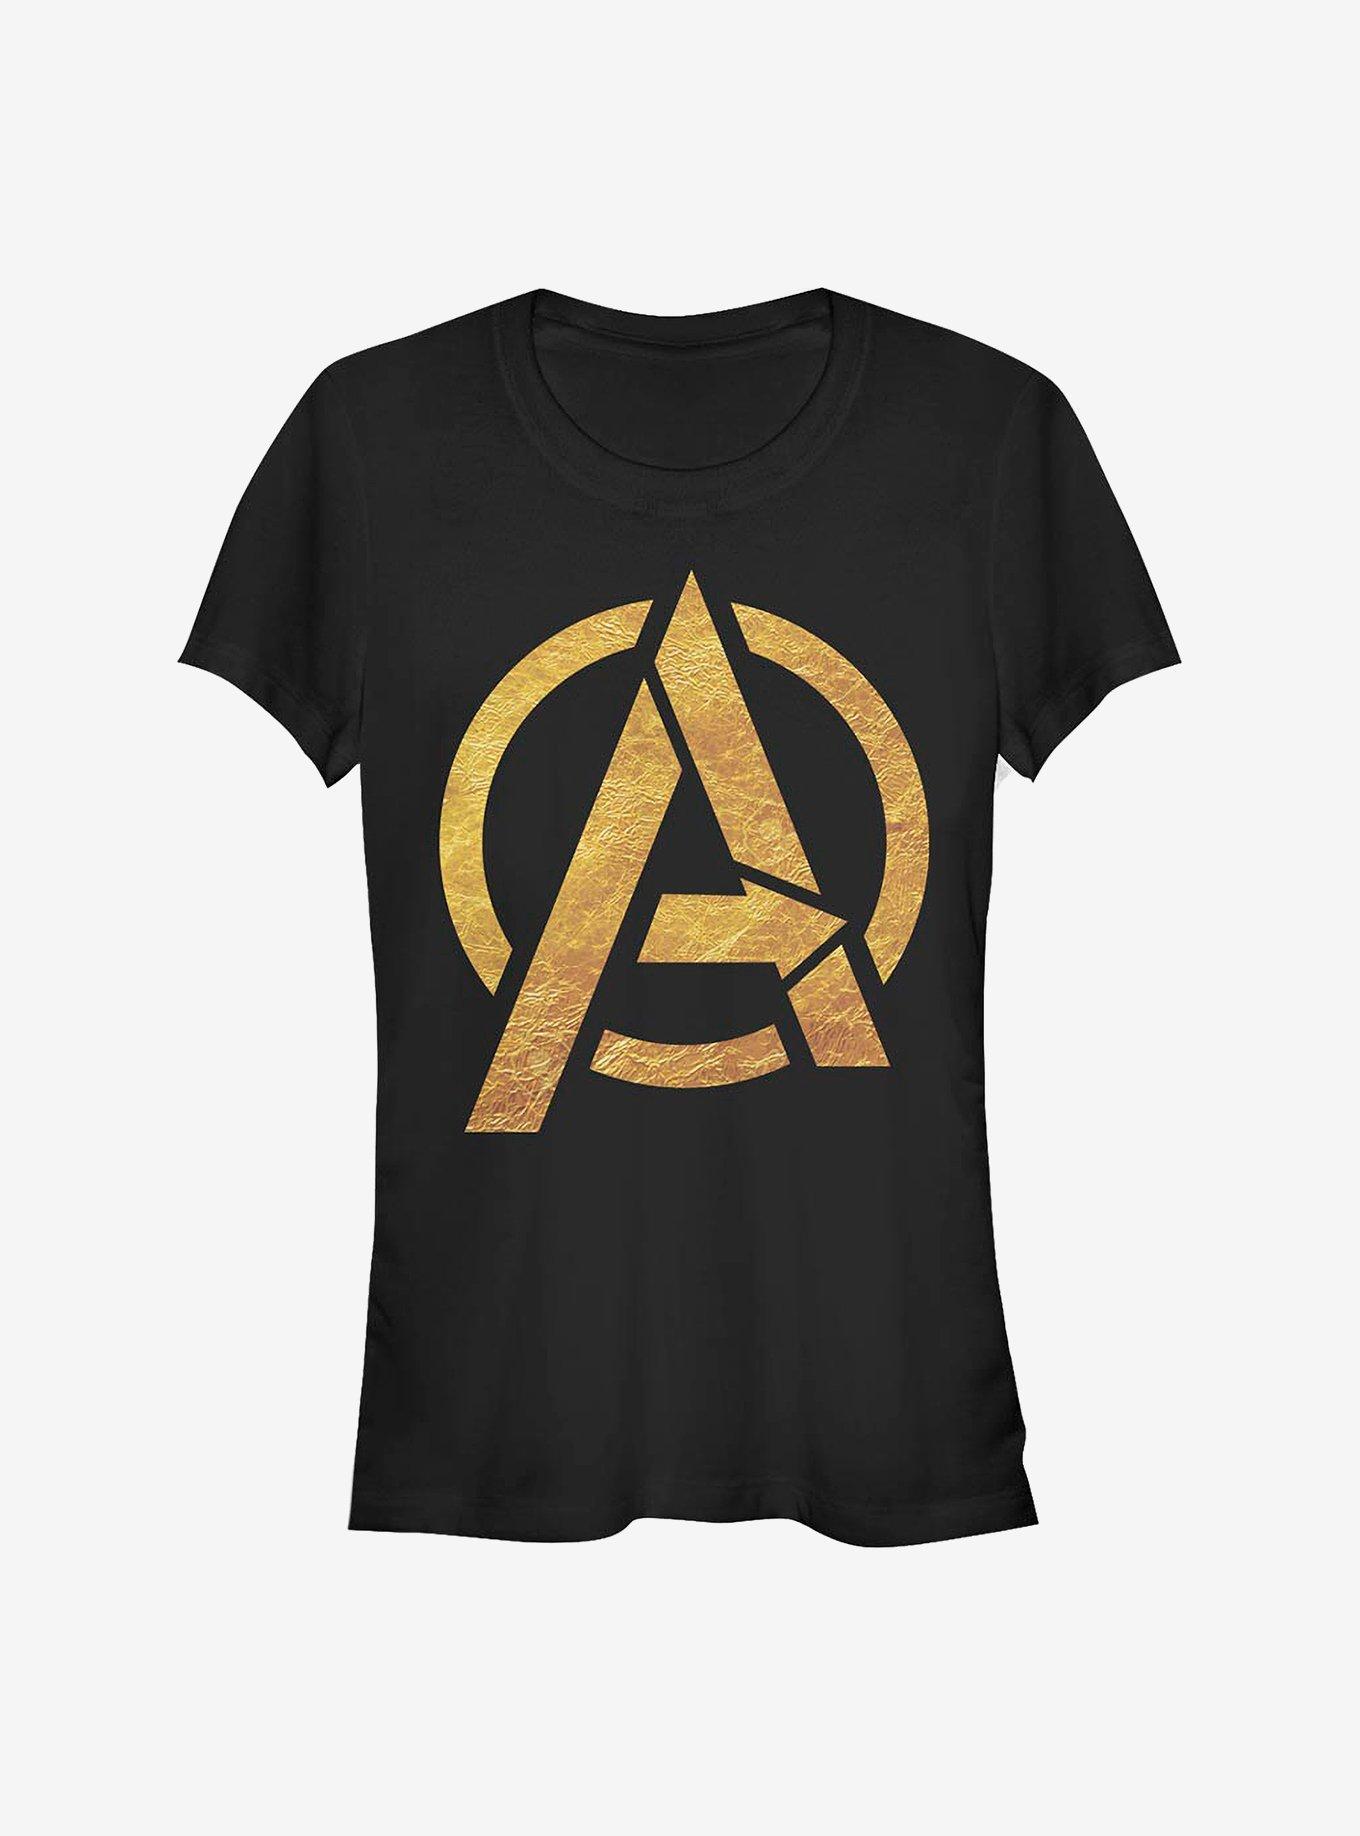 Marvel Avengers Gold Logo Avengers Girls T-Shirt, BLACK, hi-res